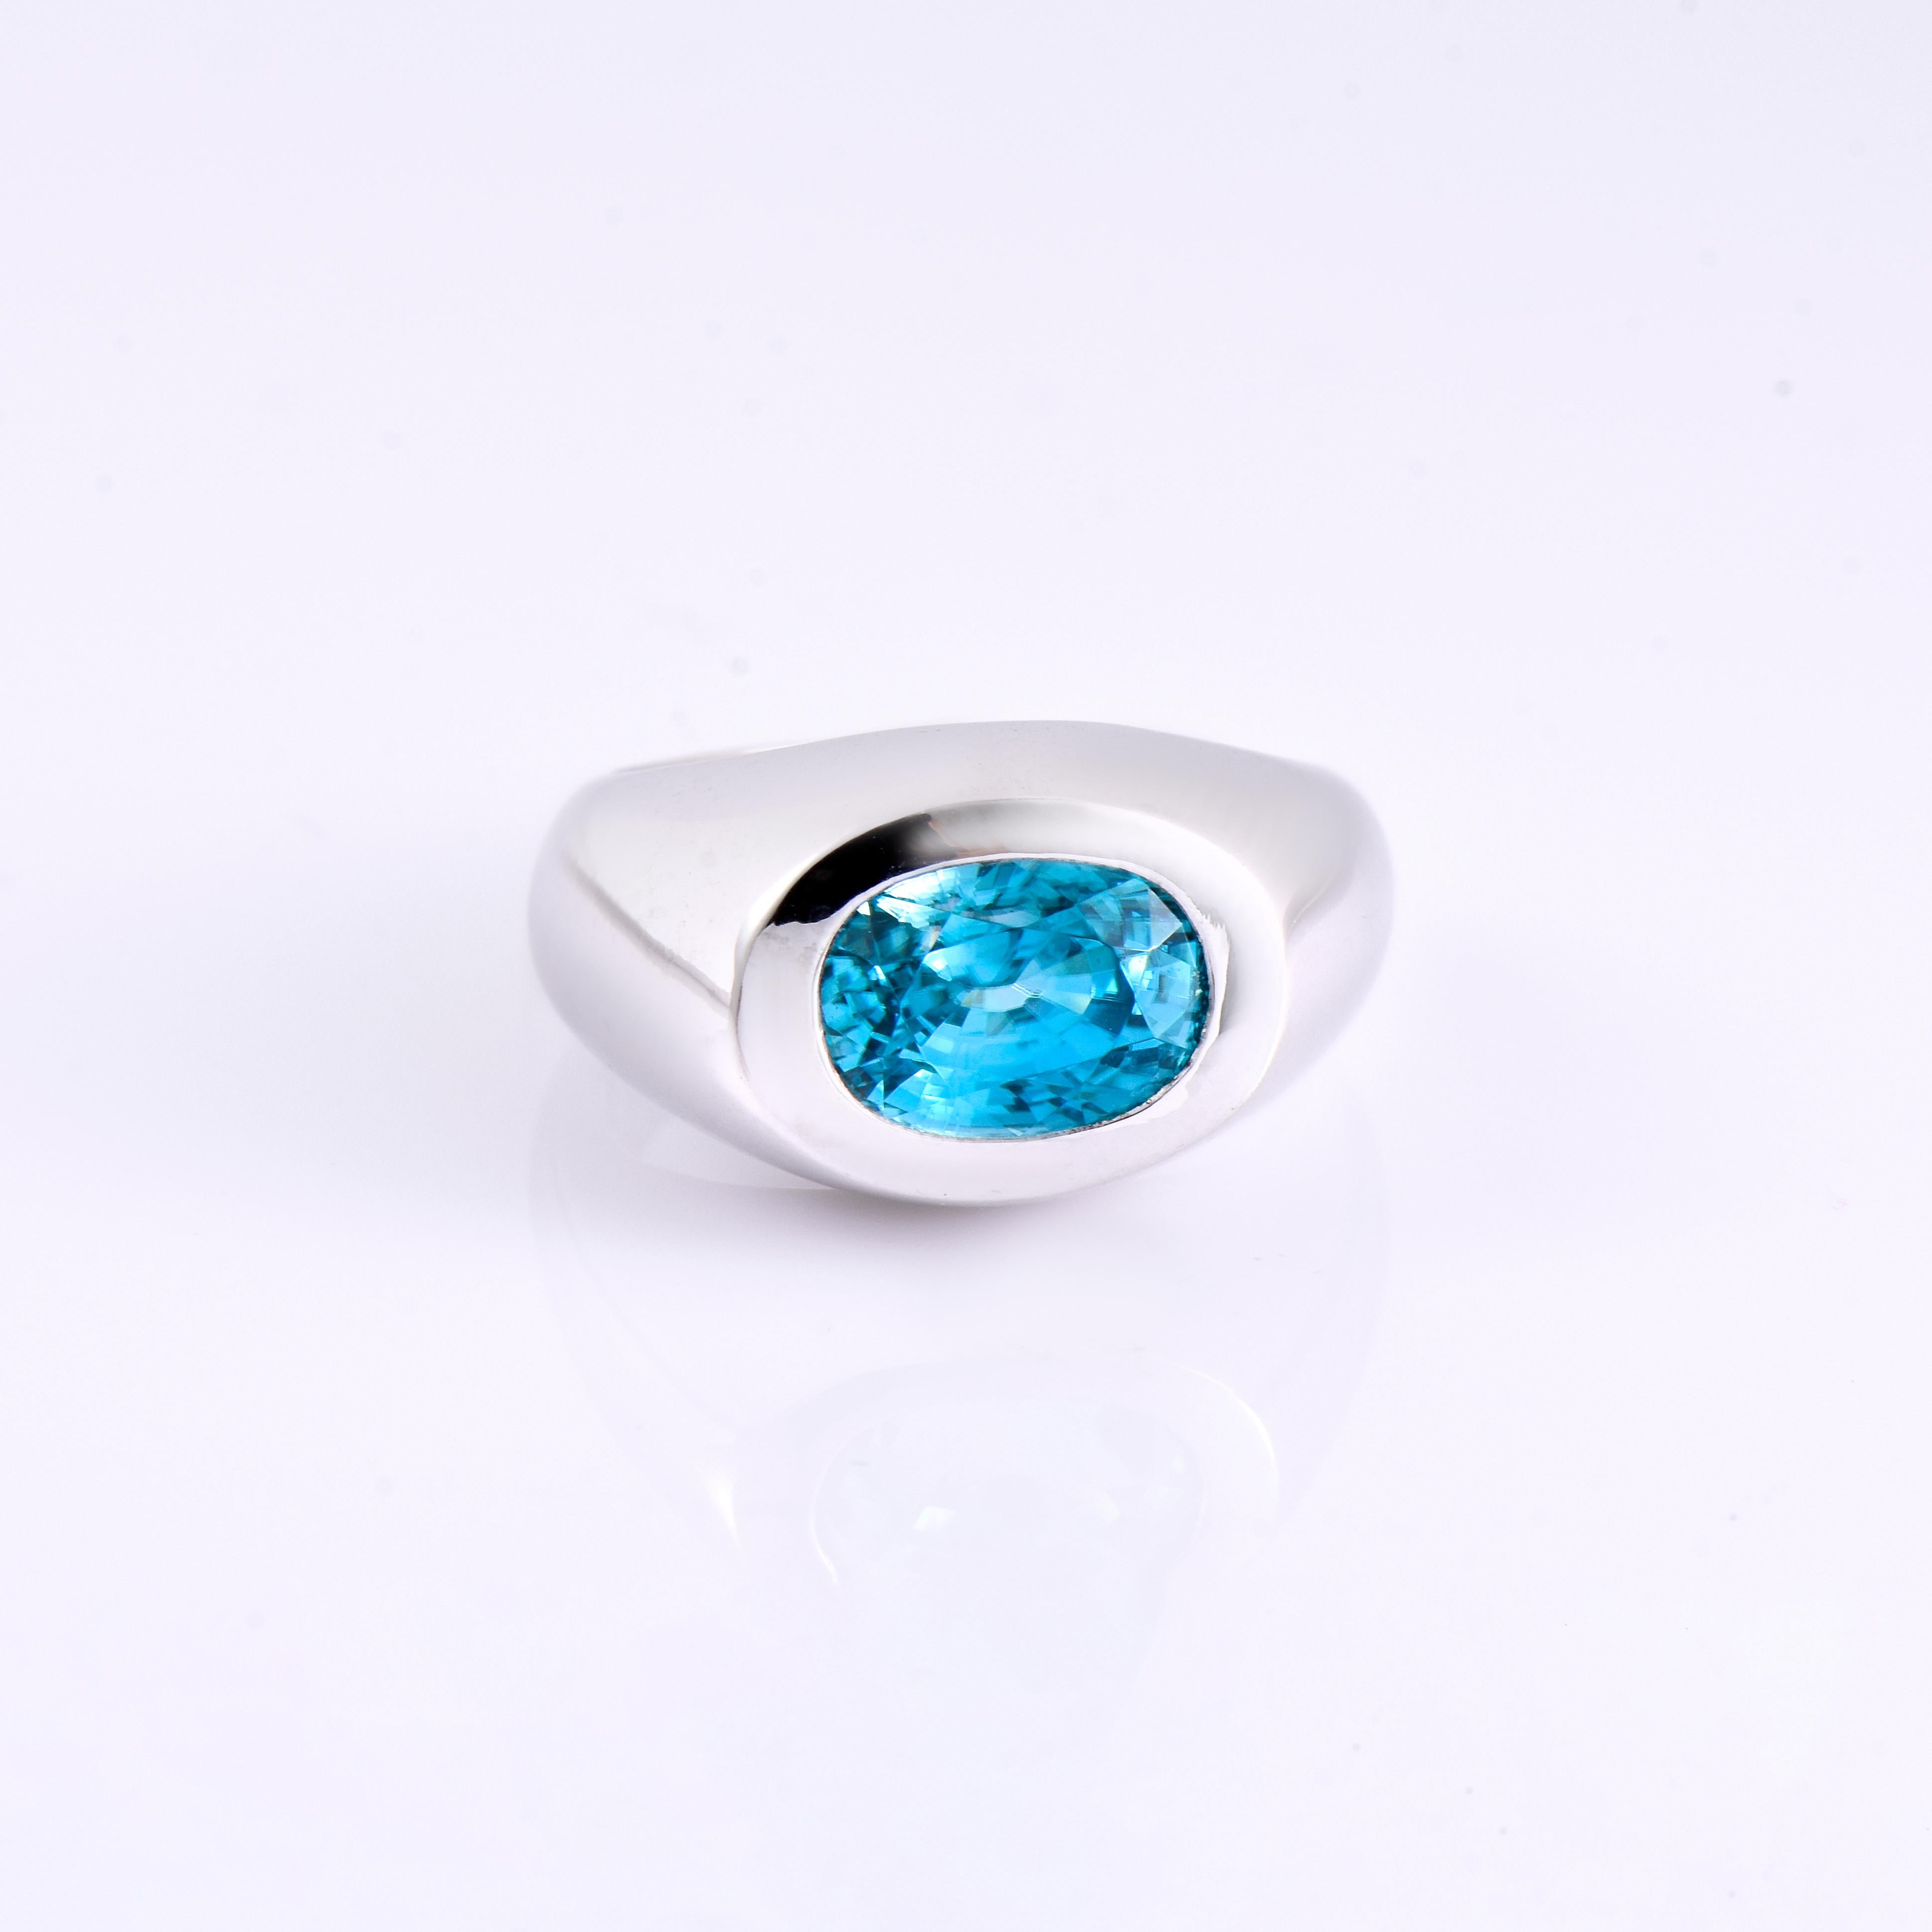 Orloff of Denmark; 925 Sterling Silber Ring mit einem 5,92 Karat natürlichen blauen Zirkon aus Kambodscha.

Dieses Stück wurde in sorgfältiger Handarbeit aus 925er Sterlingsilber gefertigt.
In der Mitte befindet sich ein fantastischer blauer Zirkon